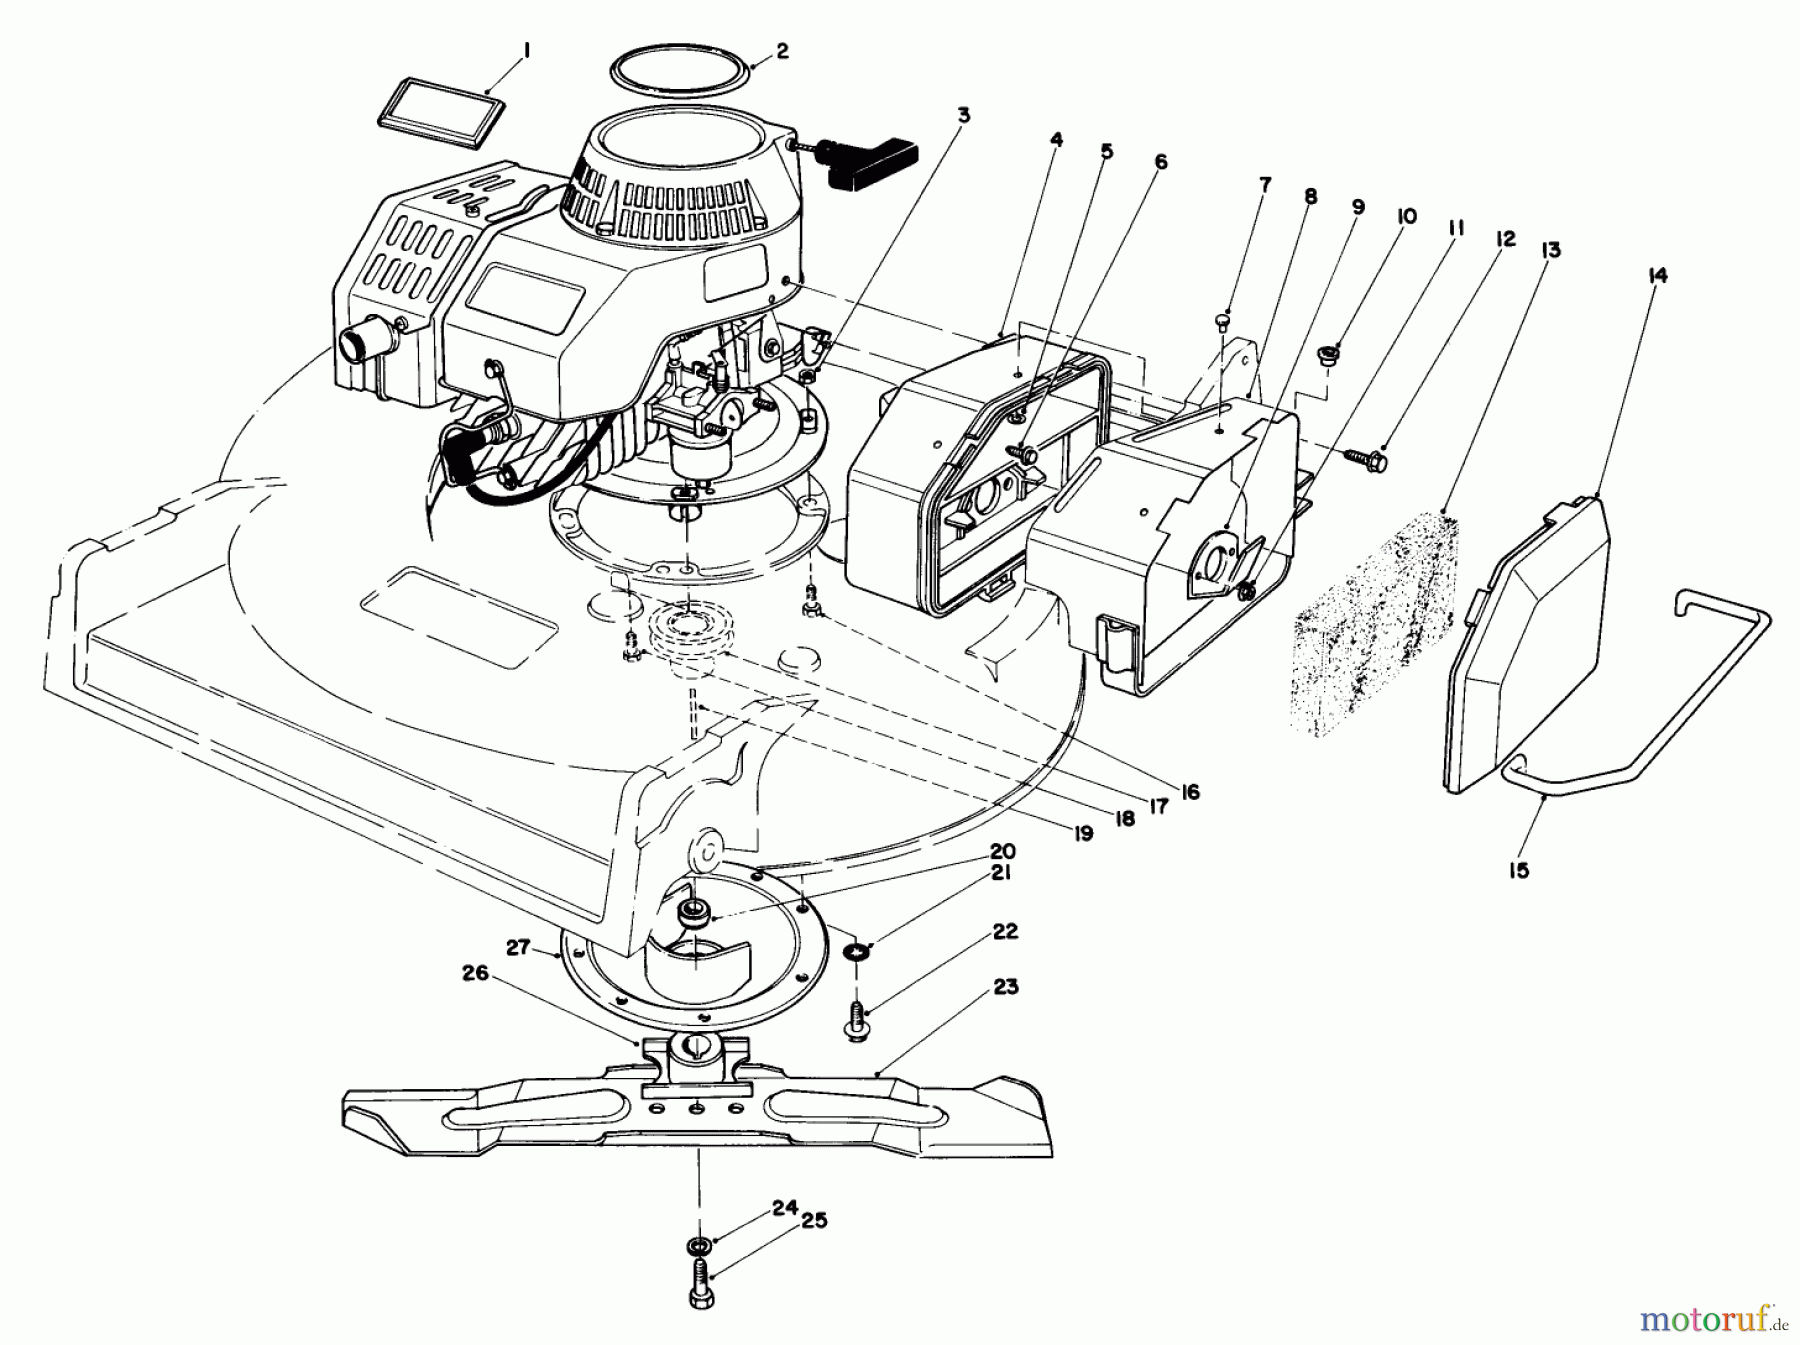  Toro Neu Mowers, Walk-Behind Seite 2 22035 - Toro Lawnmower, 1987 (7000001-7999999) ENGINE ASSEMBLY (MODEL 22035)